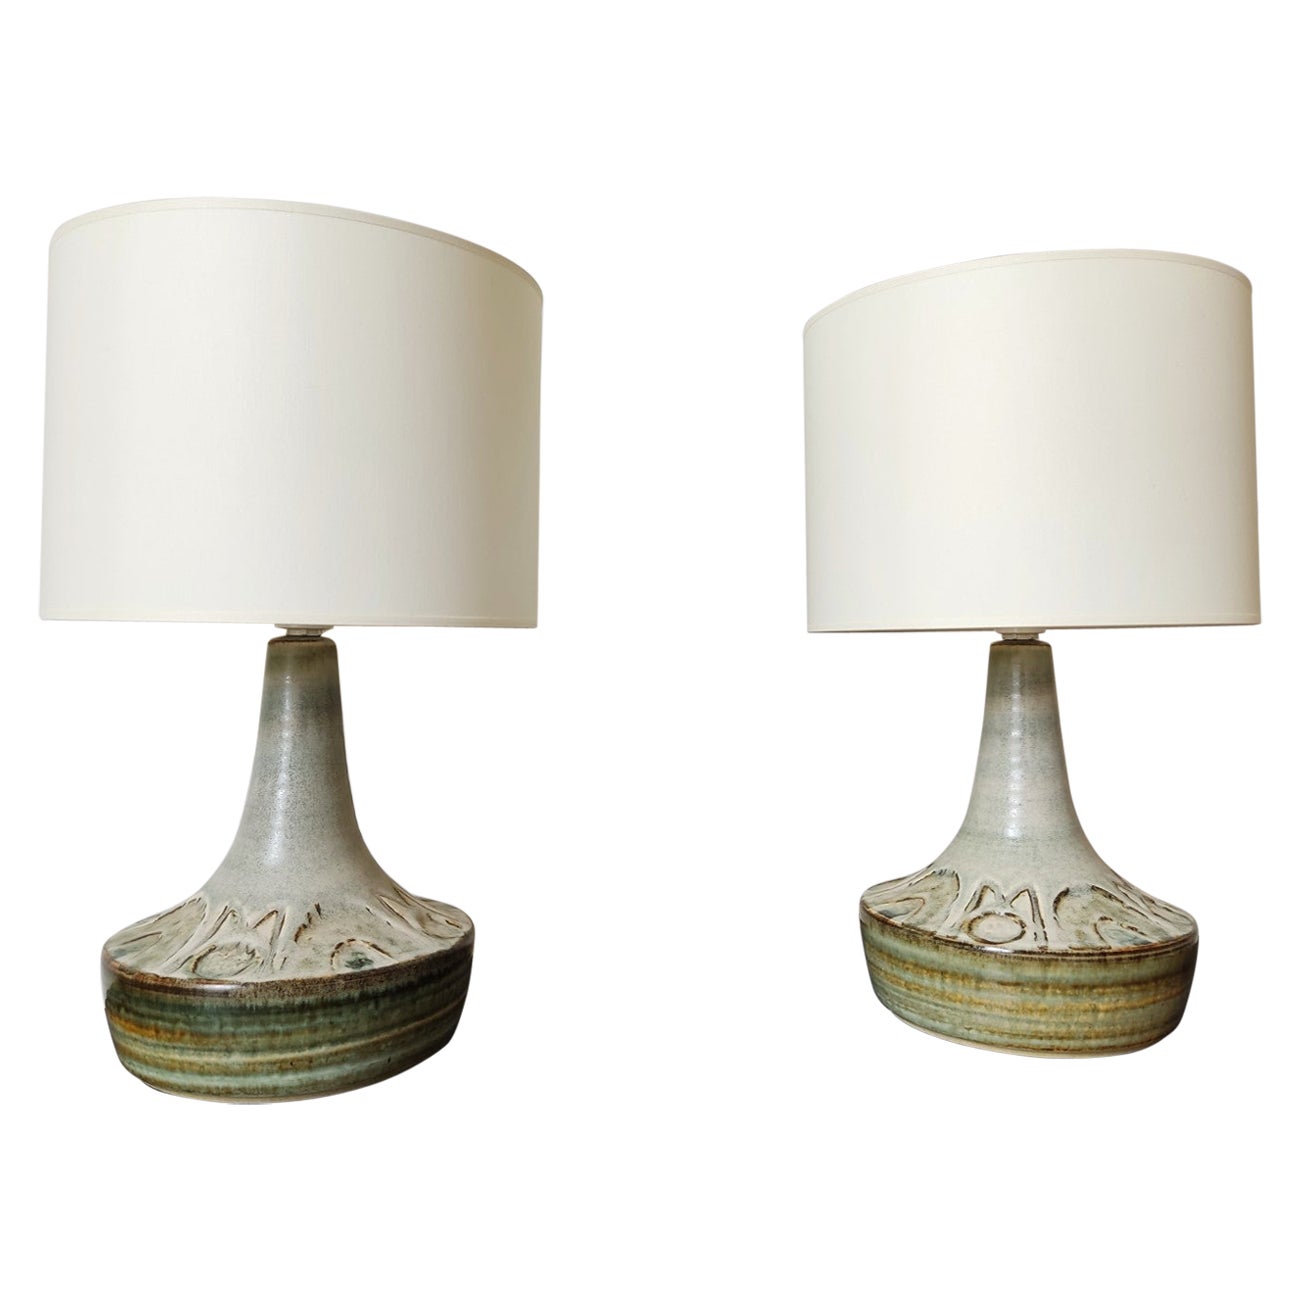 Pair of ceramic danish lamps by Soholm - 1960s 